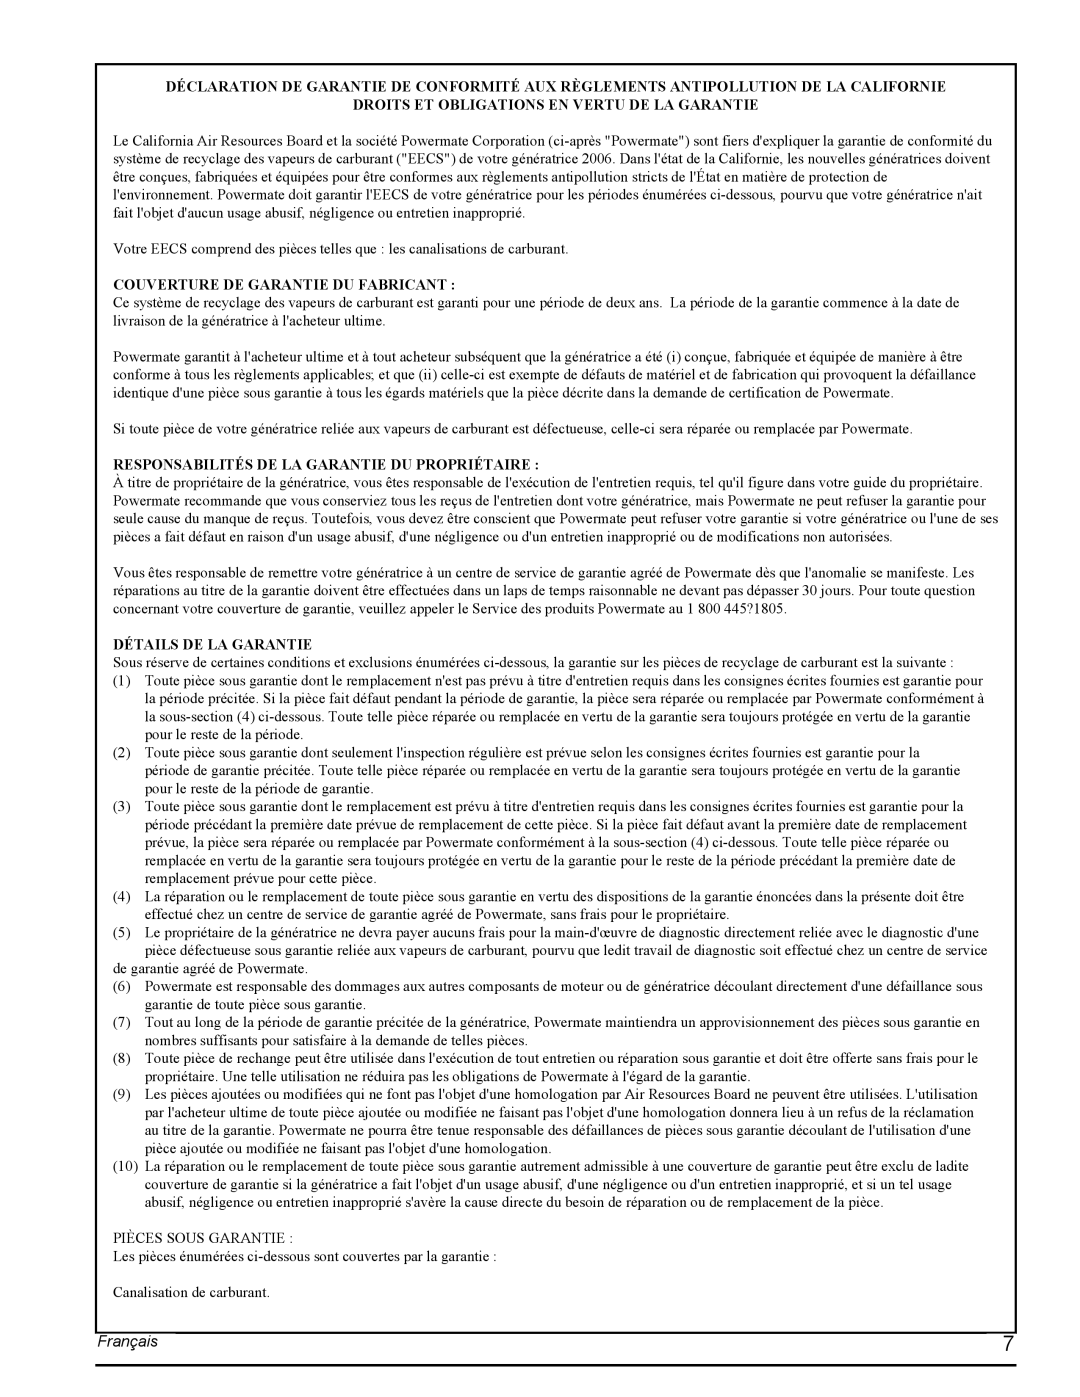 Powermate PMC435001 manual Français, Droits Et Obligations En Vertu De La Garantie, Couverture De Garantie Du Fabricant 